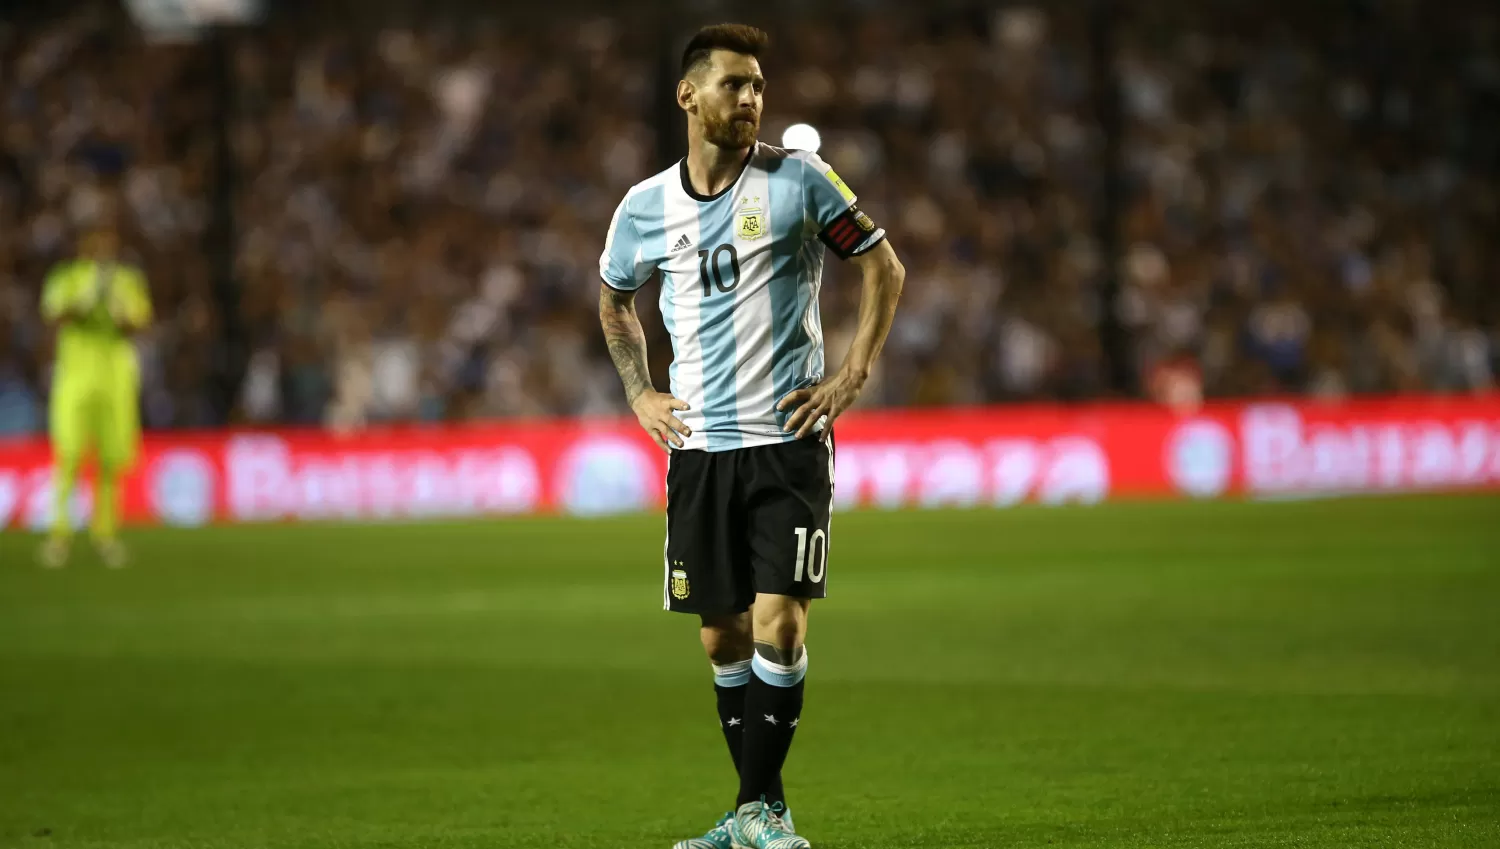 LIONEL MESSI. El capitán de Argentina, luego del partido contra Perú. REUTERS